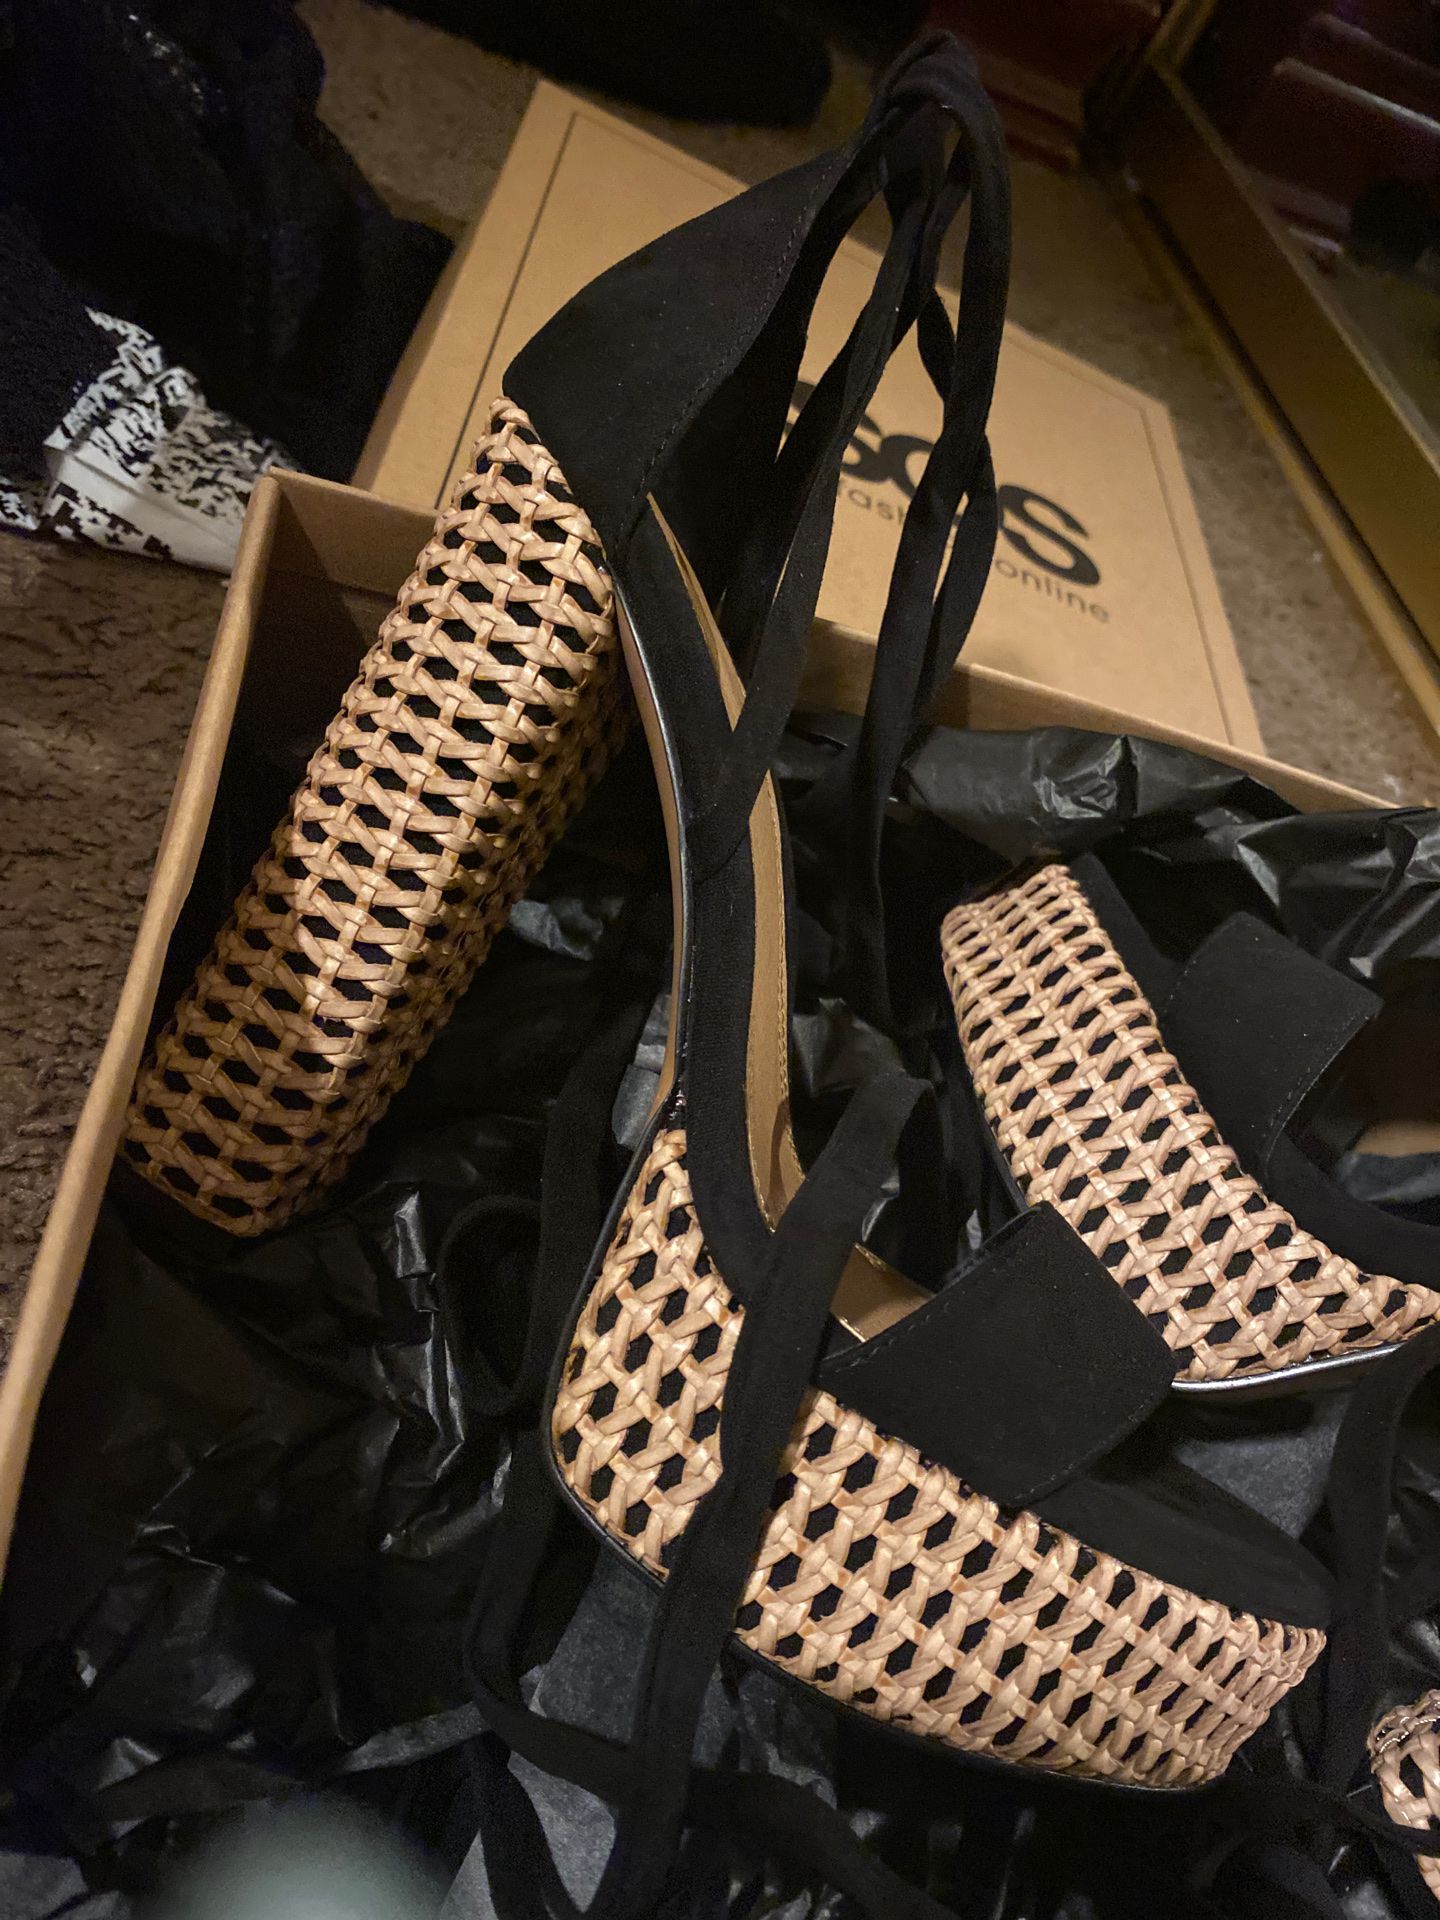 New asos platform heels